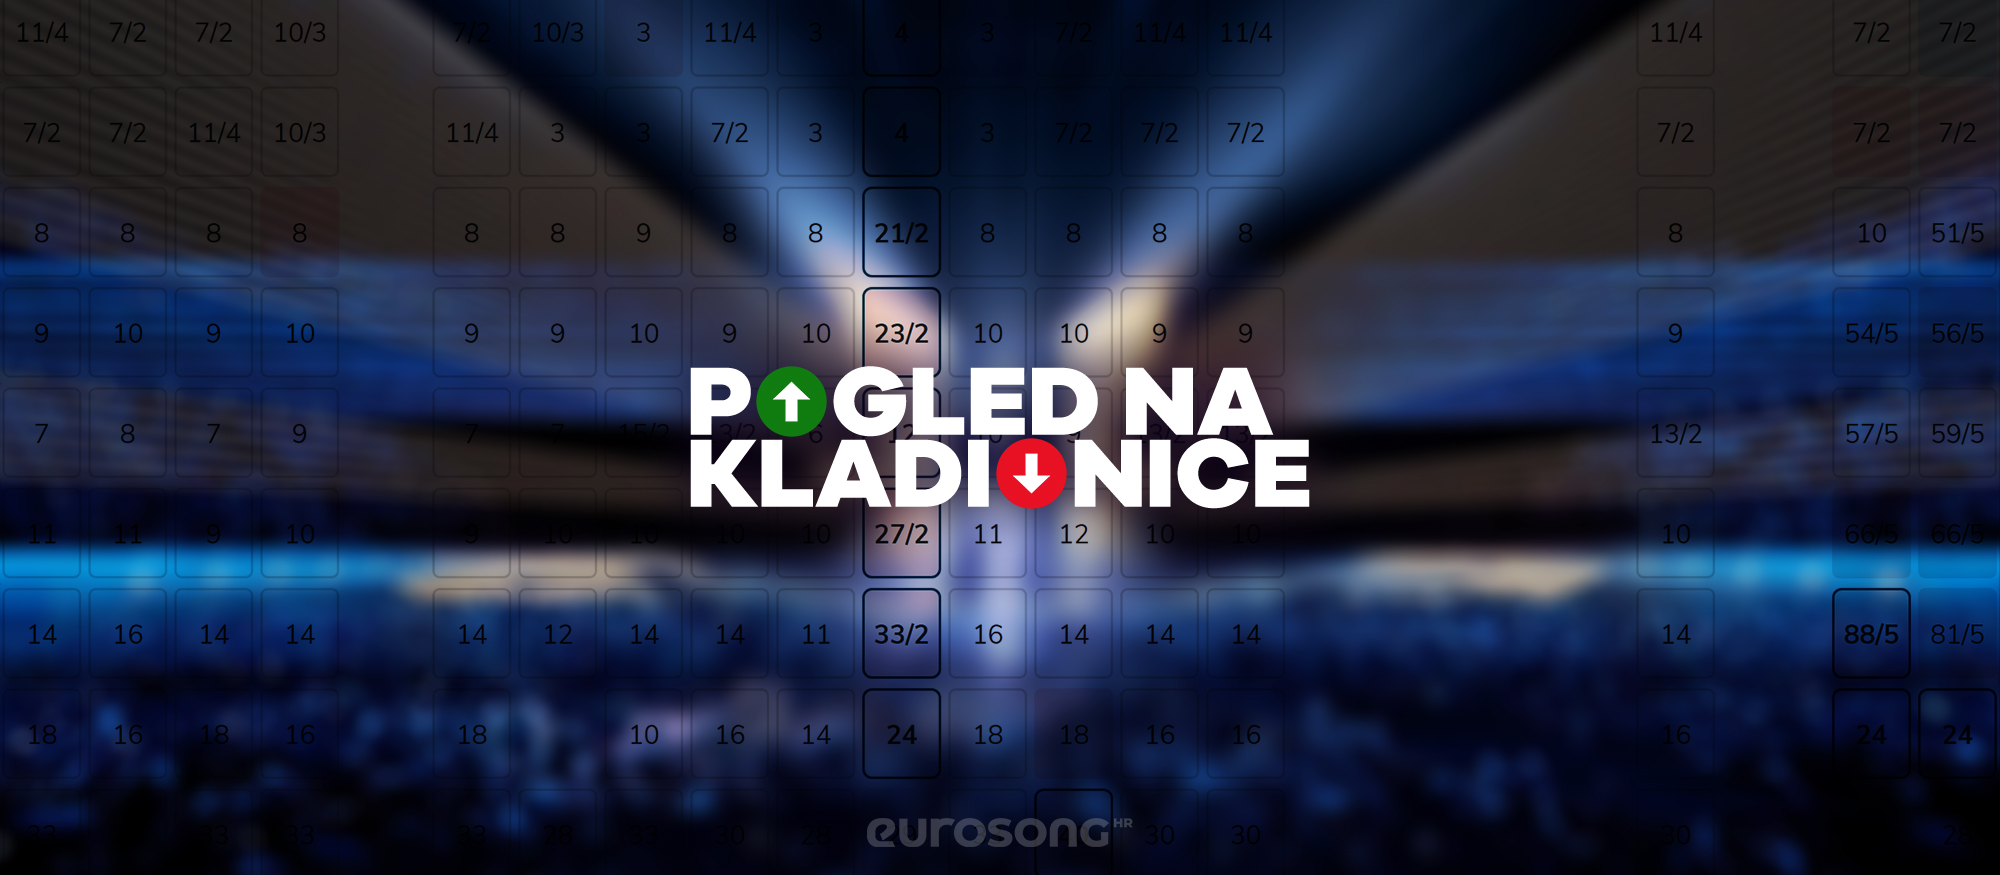 Vizual za projekt "Pogled na kladionice" u kojem se analiziraju kladionice prije Eurosonga